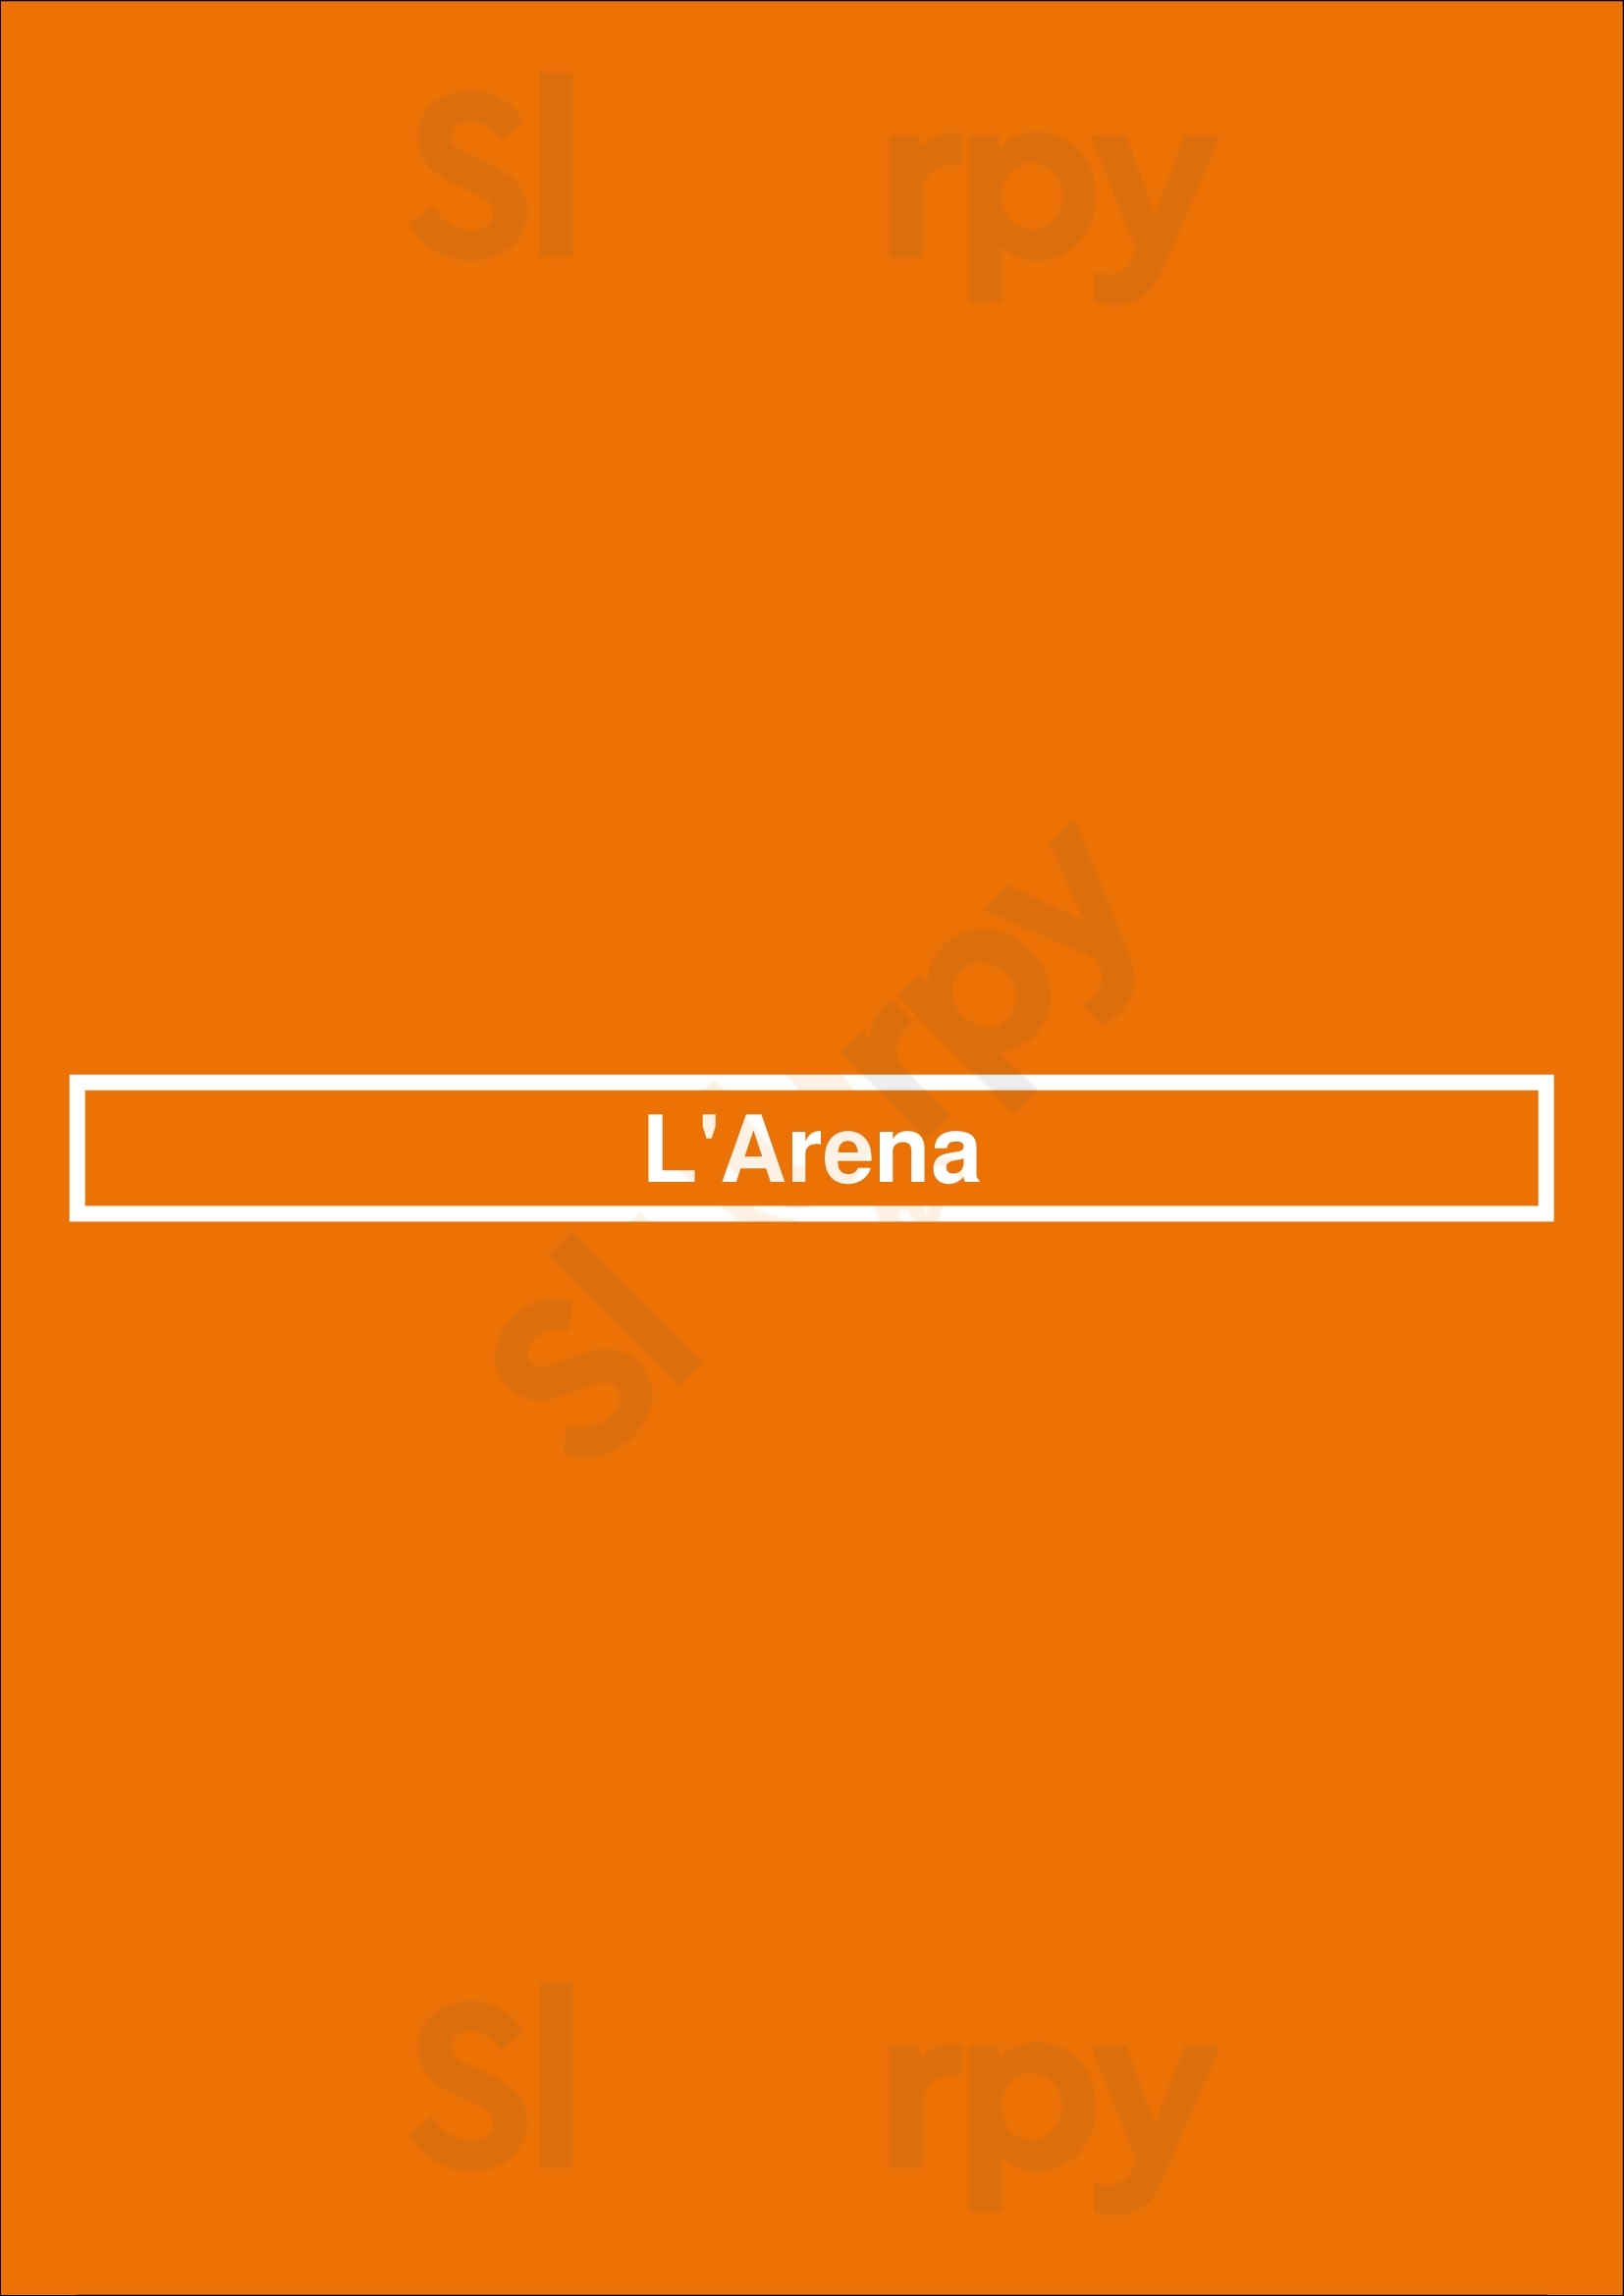 L'arena Amsterdam Menu - 1